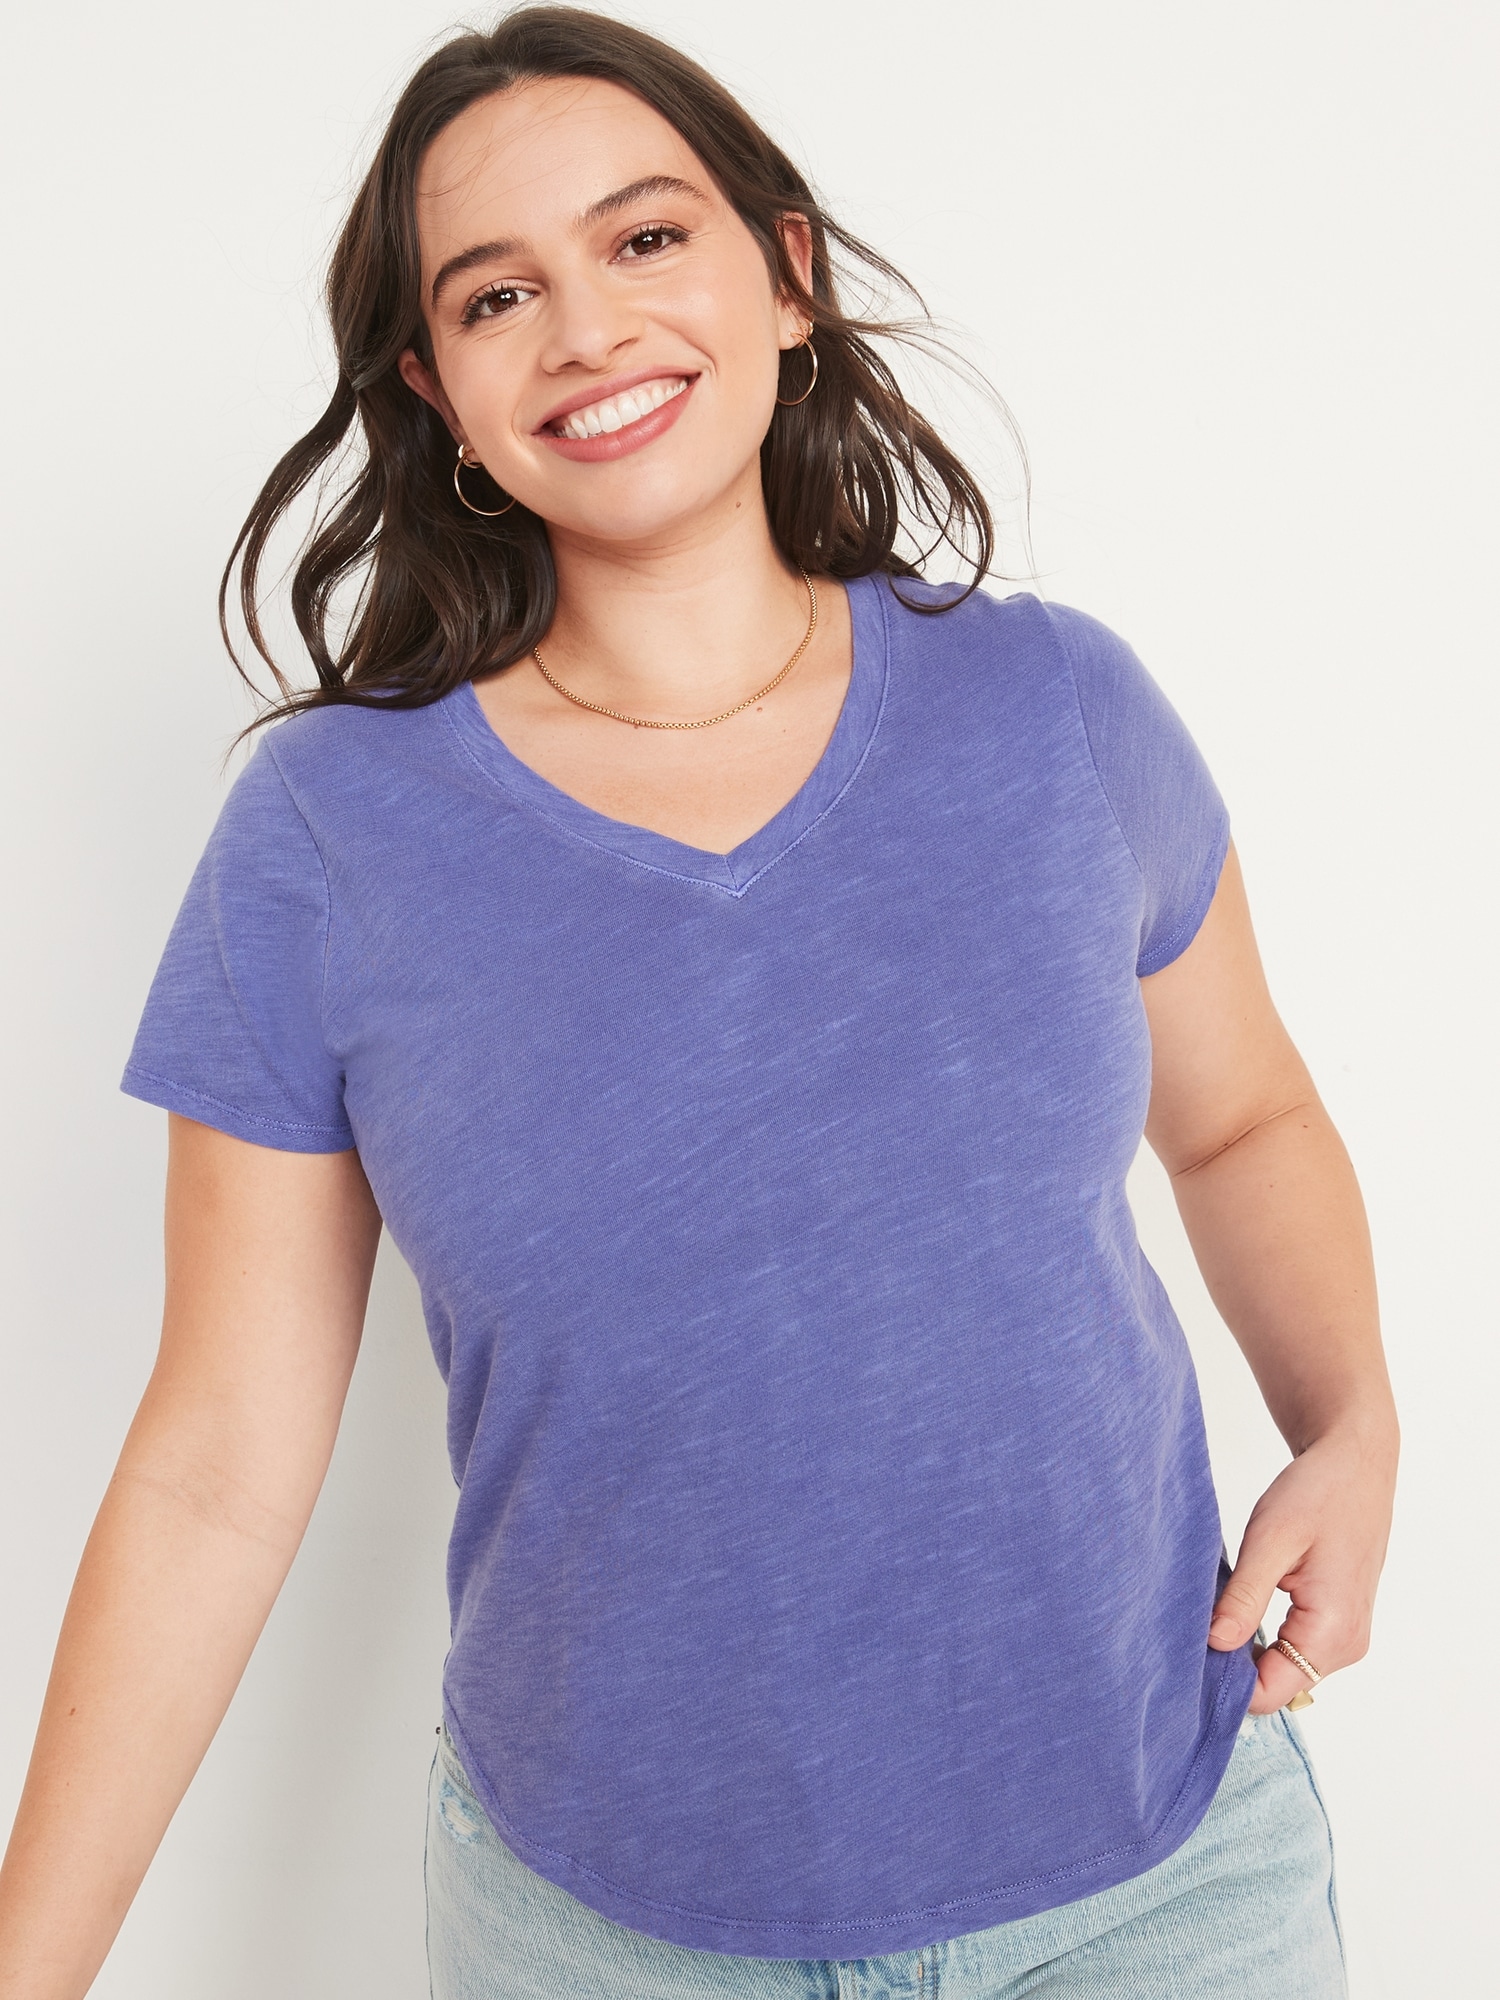 Short-Sleeve EveryWear V-Neck Slub-Knit T-Shirt for Women | Old Navy